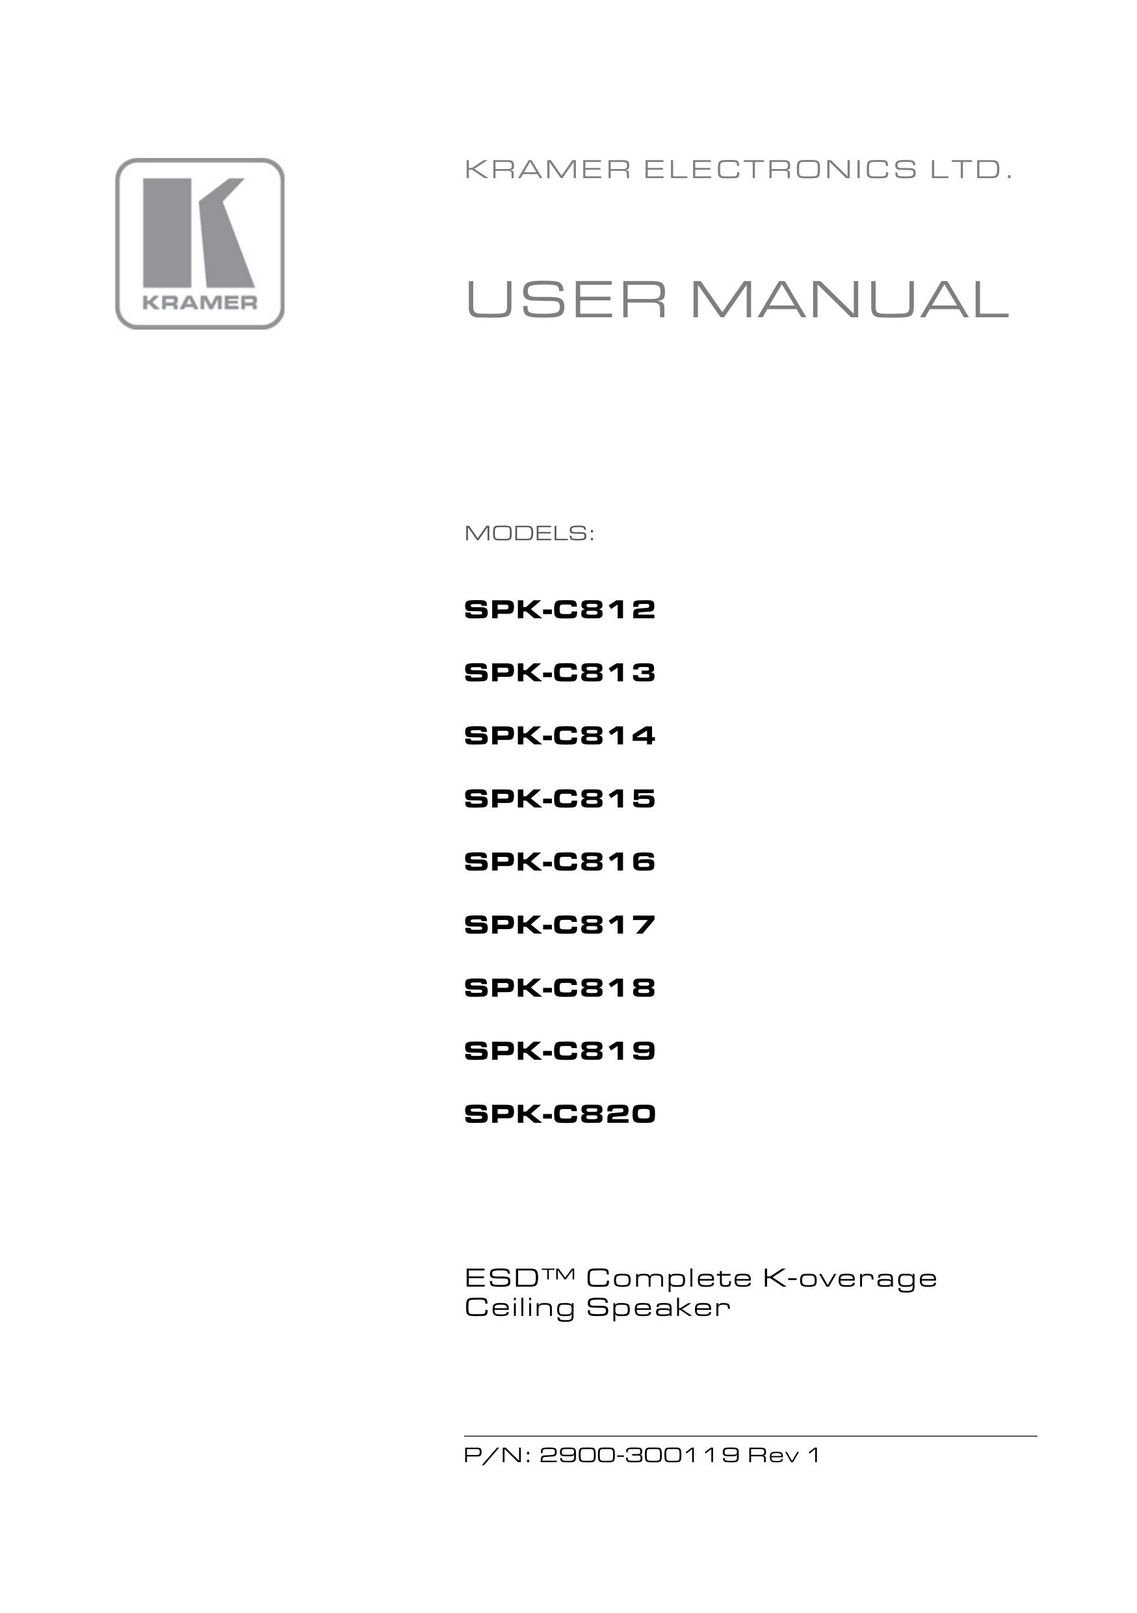 Kramer Electronics spk-cs20 Speaker User Manual